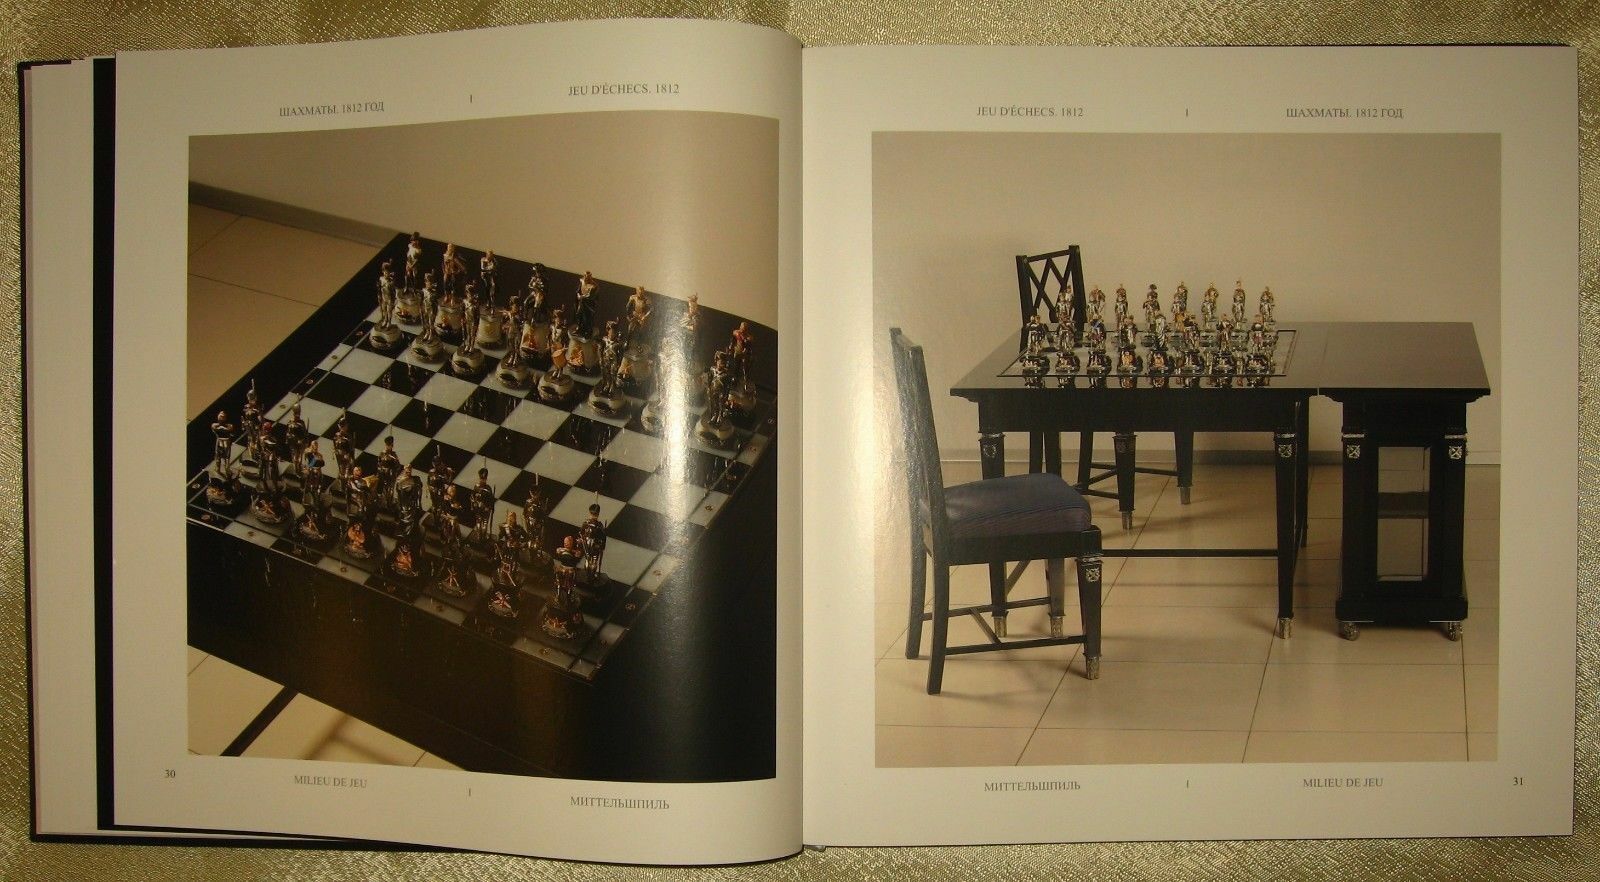 11504.Russian Chess Book: Andrei Ambrosovich, Vitali Feygine. Jeu dechecs. 1812. 2009